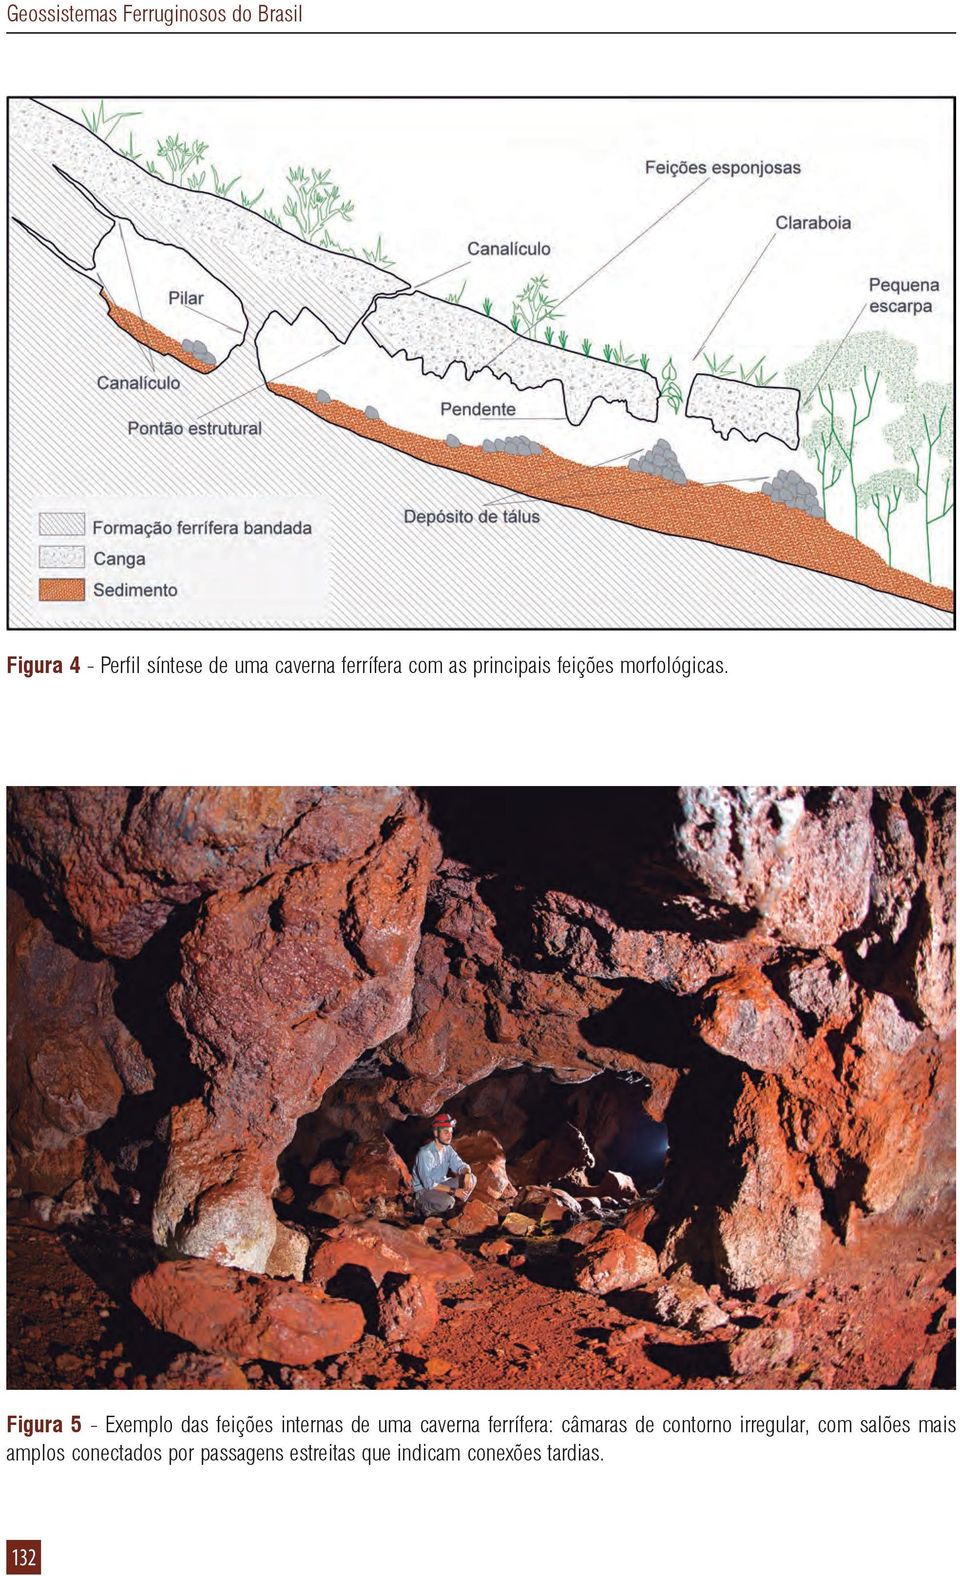 Figura 5 - Exemplo das feições internas de uma caverna ferrífera: câmaras de